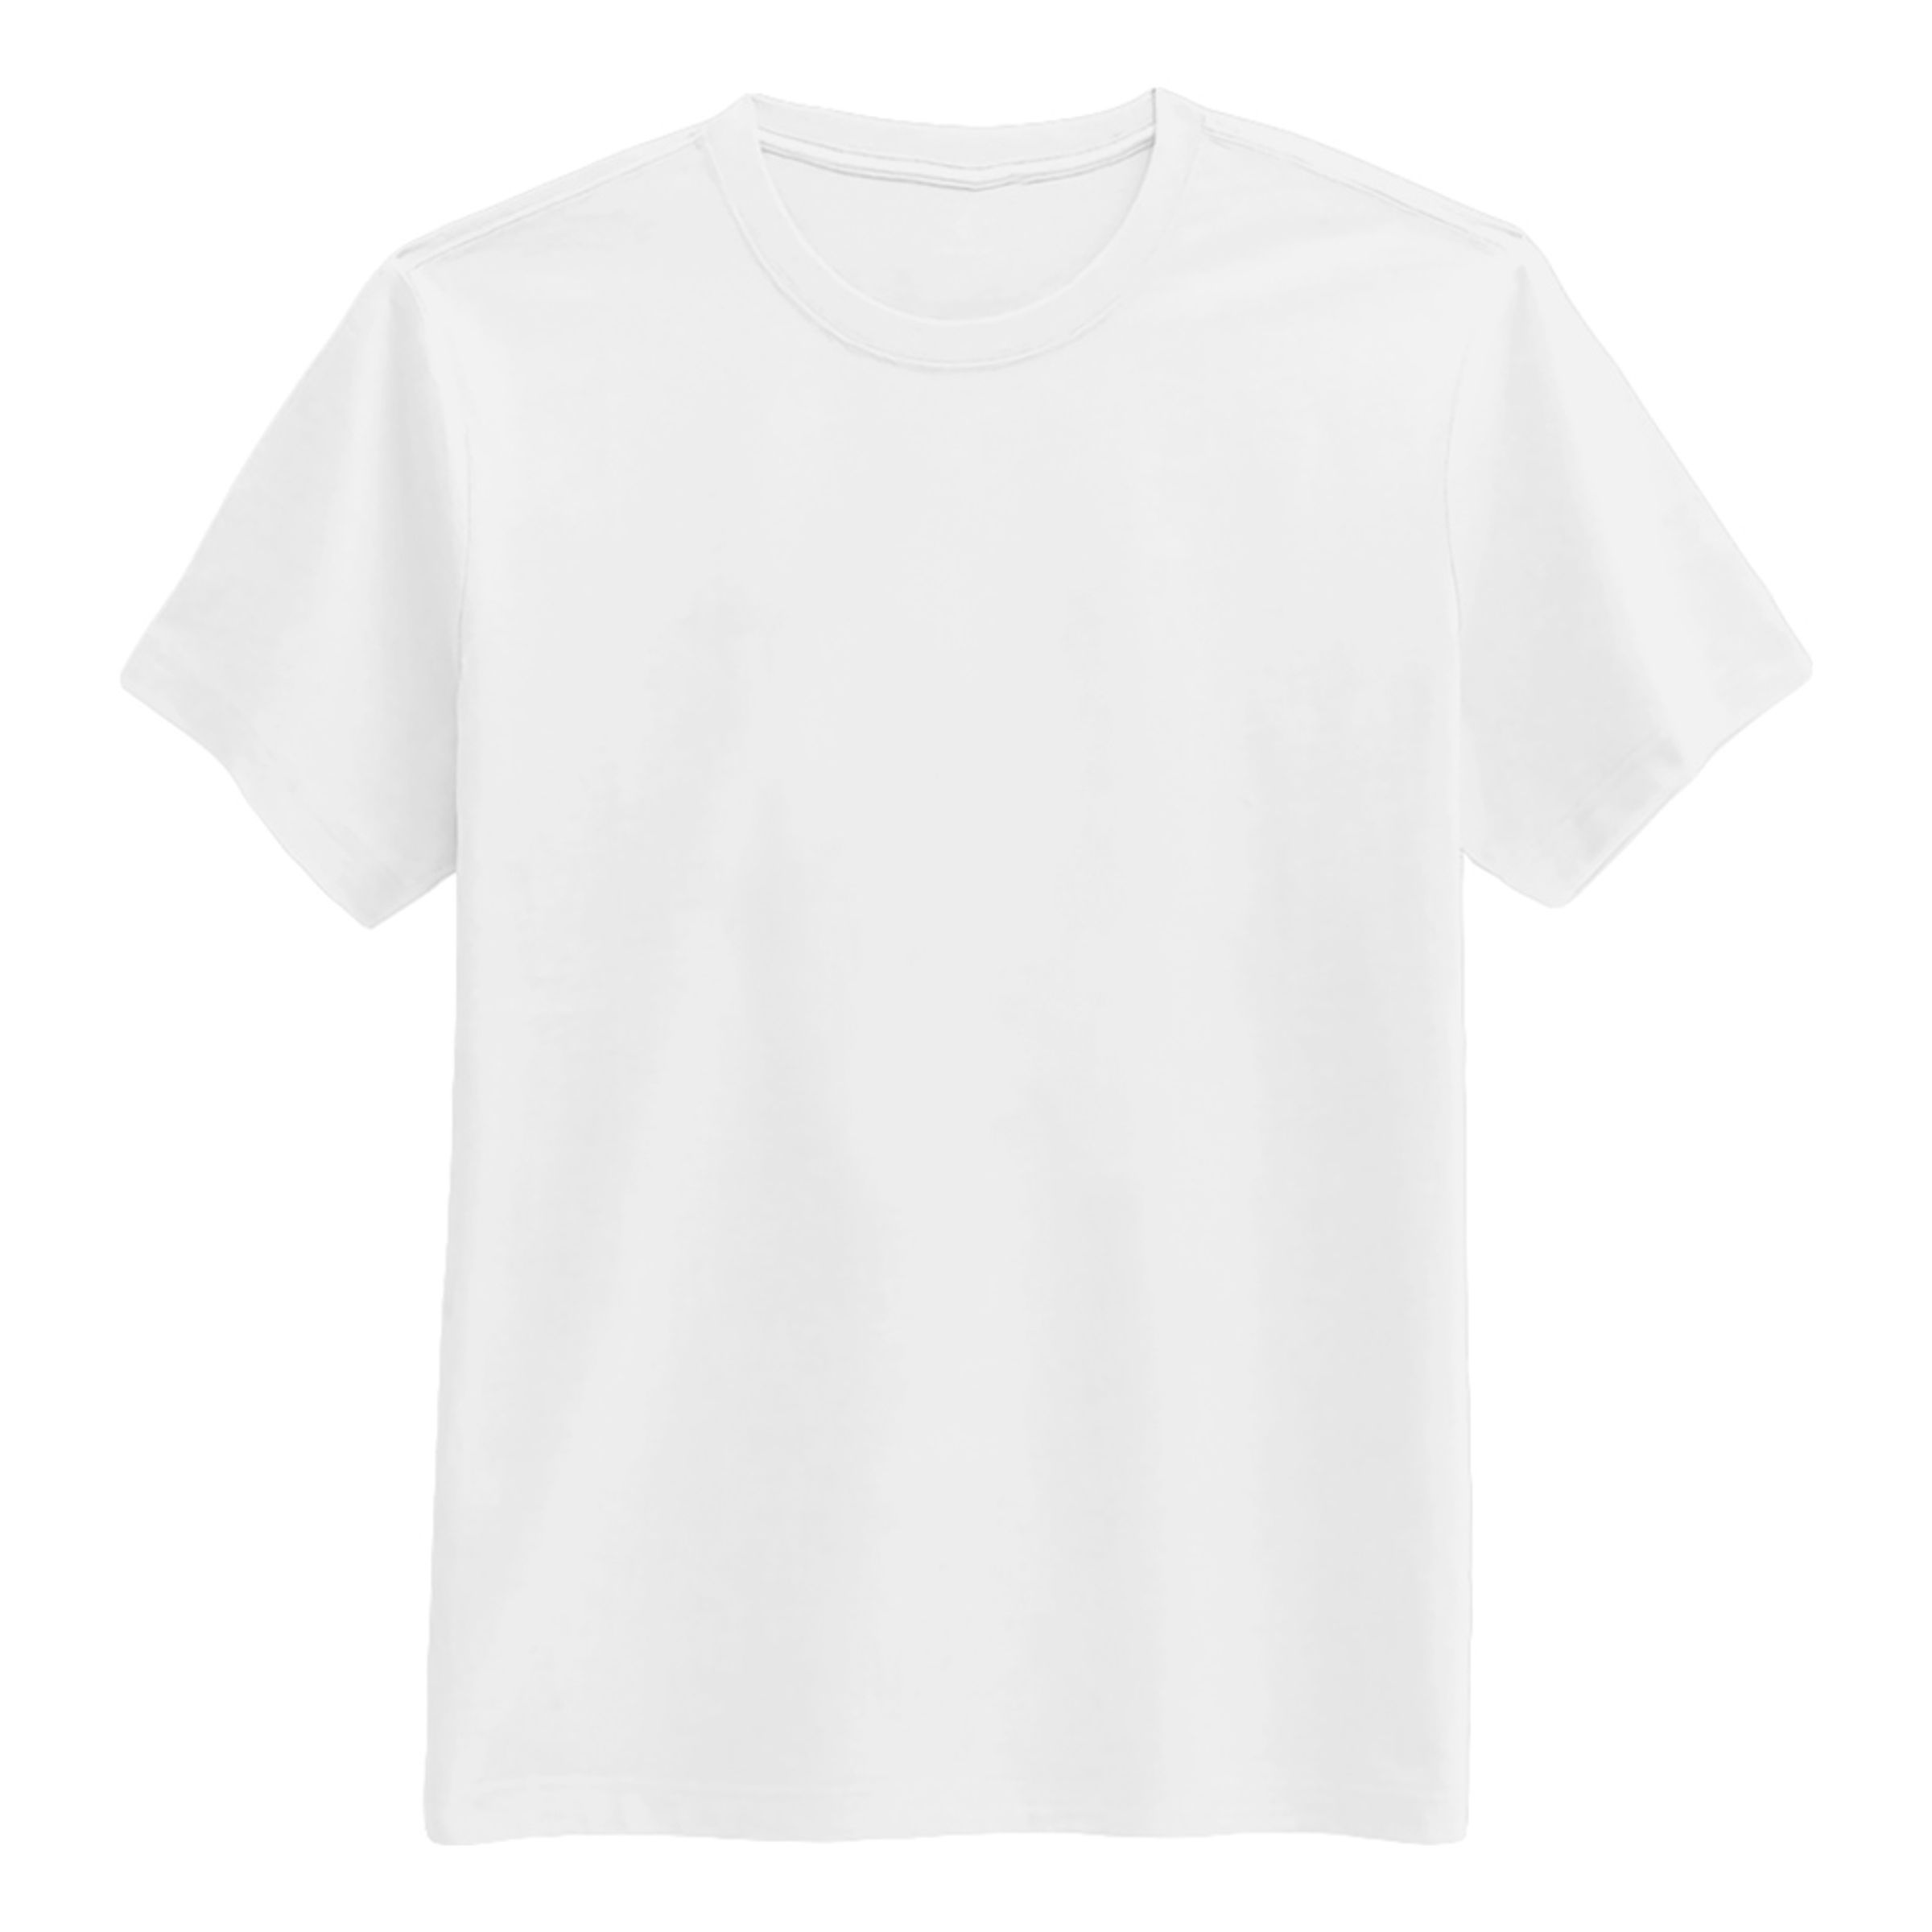 T-shirt Vit - Medium